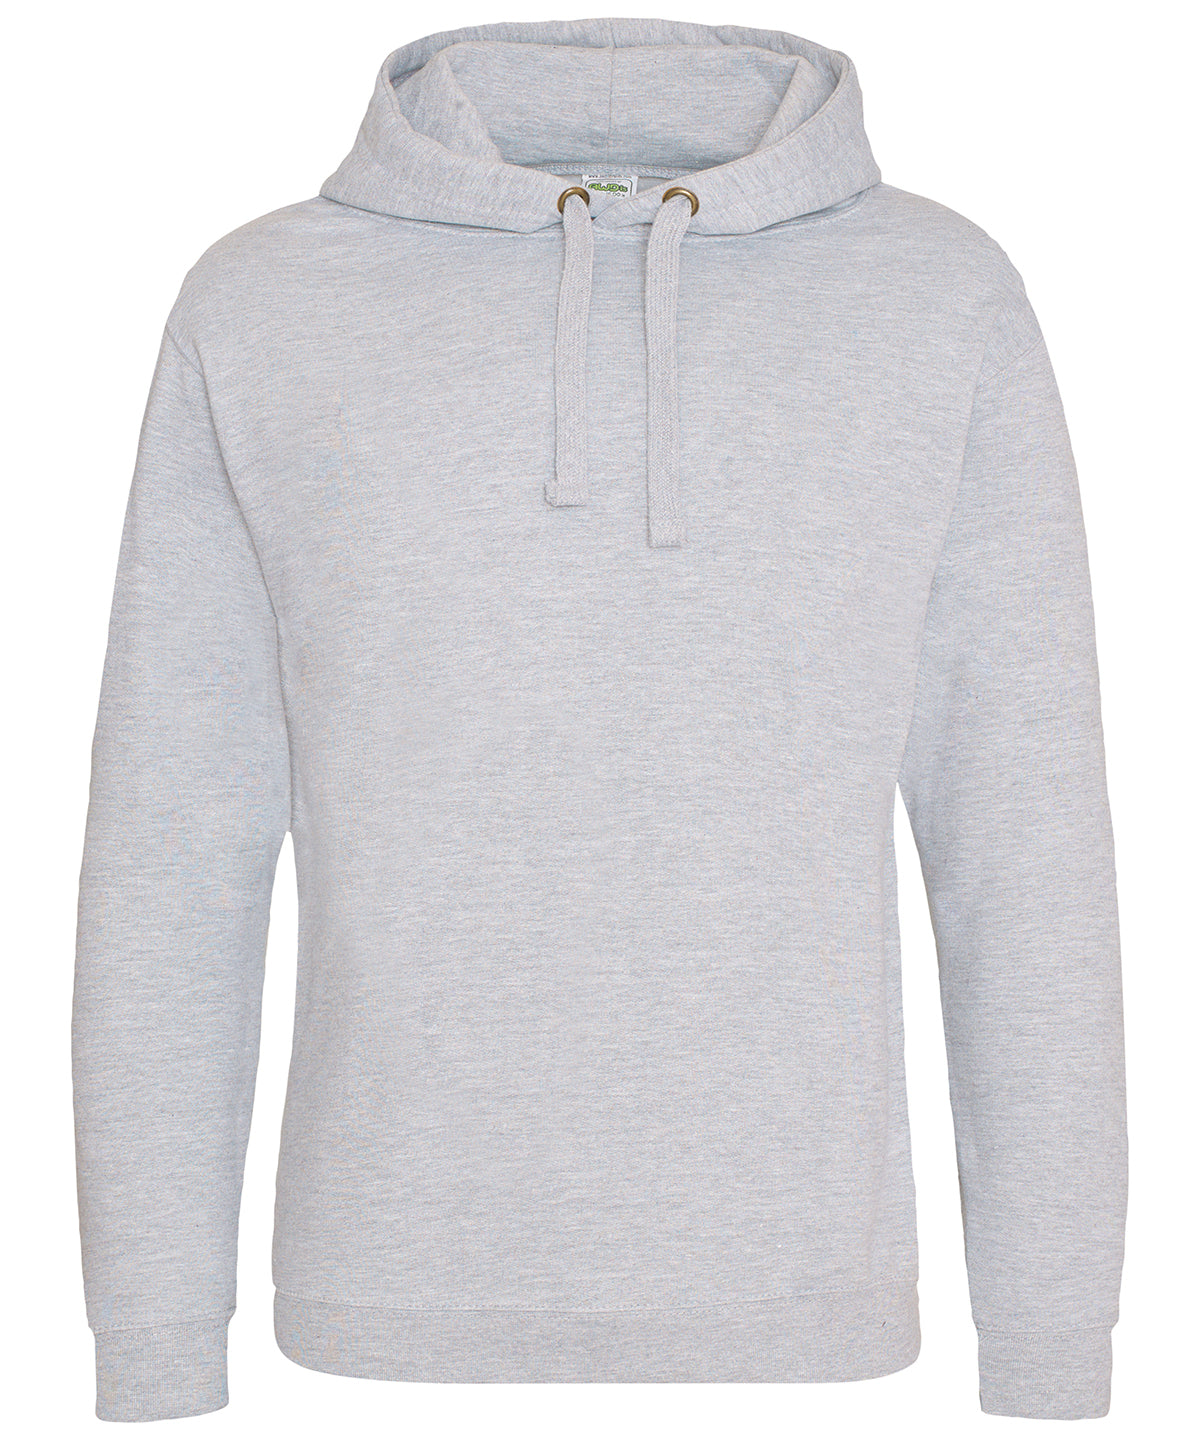 Personalised Hoodies - White AWDis Just Hoods Epic print hoodie